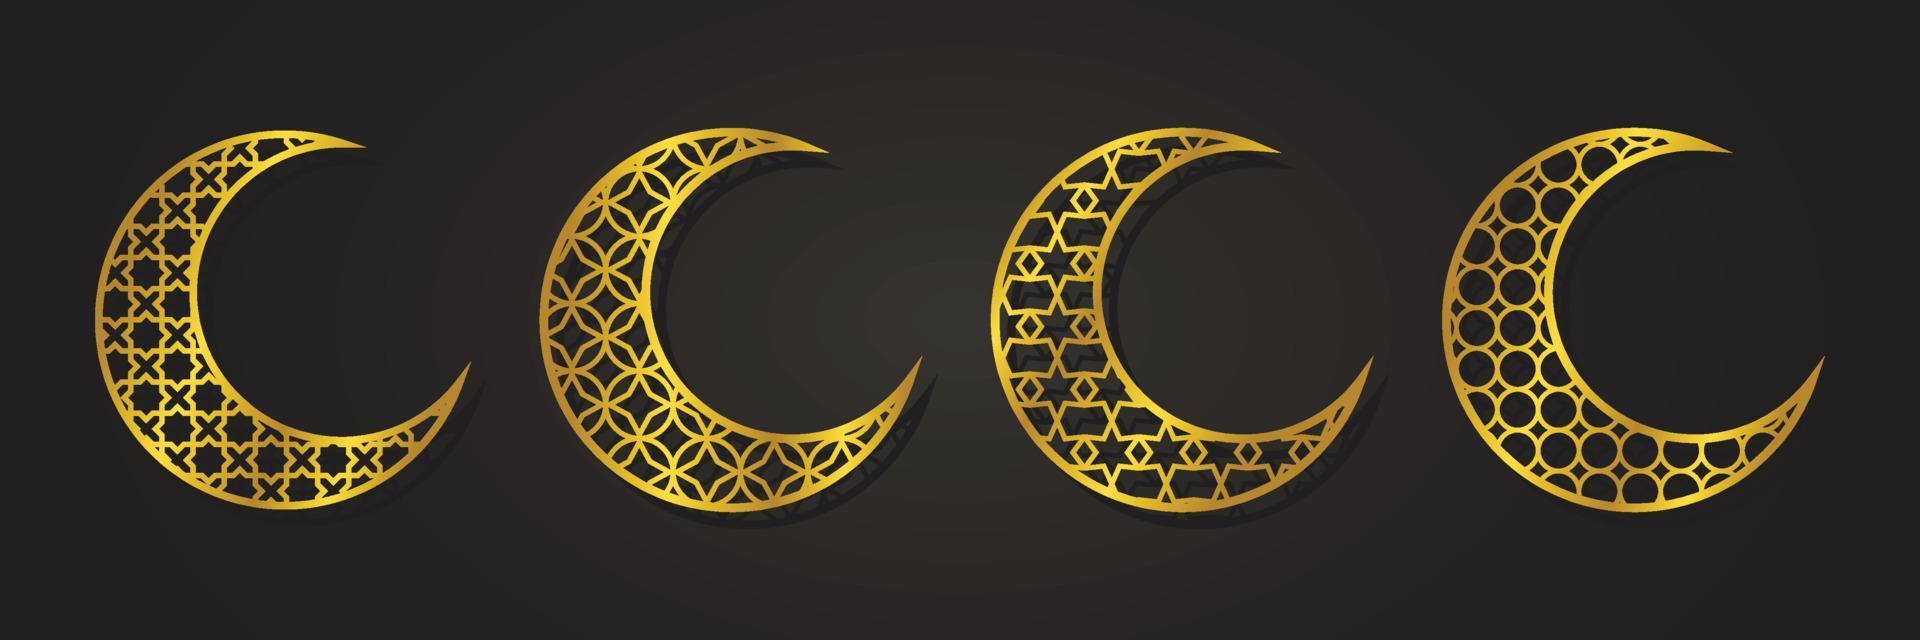 islamitische maan ornament gouden luxe, arabesk patroon, set collectie ontwerp vector